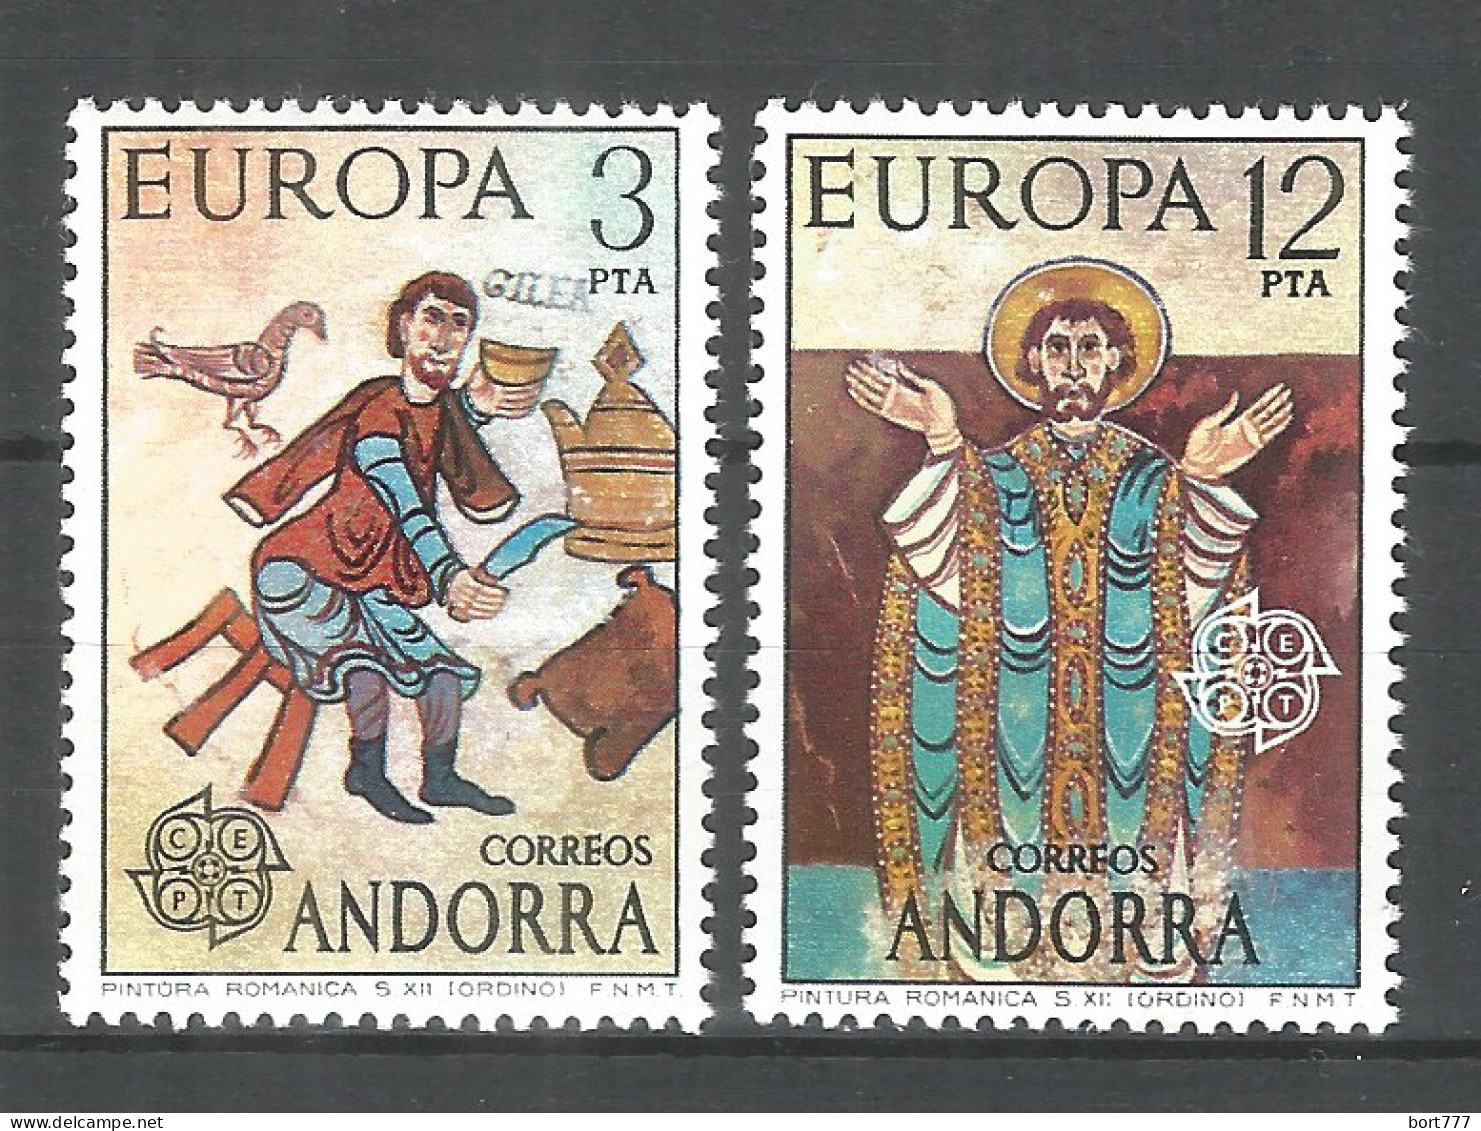 Spanish Andorra 1975 , Mint Stamps MNH (**) Europa Cept - Ungebraucht